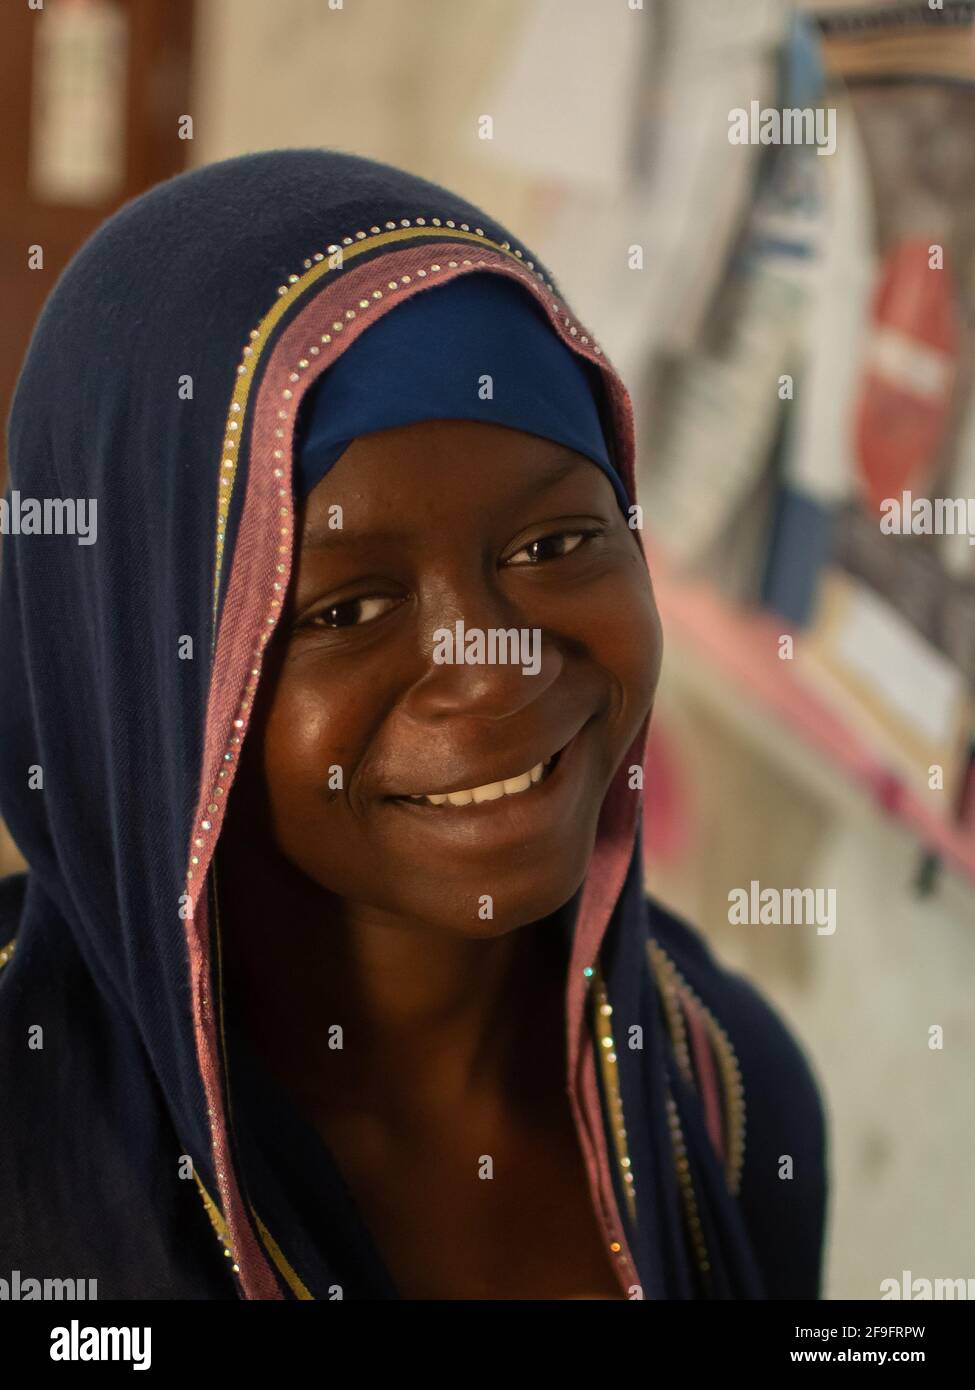 Dodoma, Tanzanie. 10-10-2018. Portrait d'une jeune femme musulmane noire belle et souriante qui attend de l'aide à l'hôpital. Banque D'Images